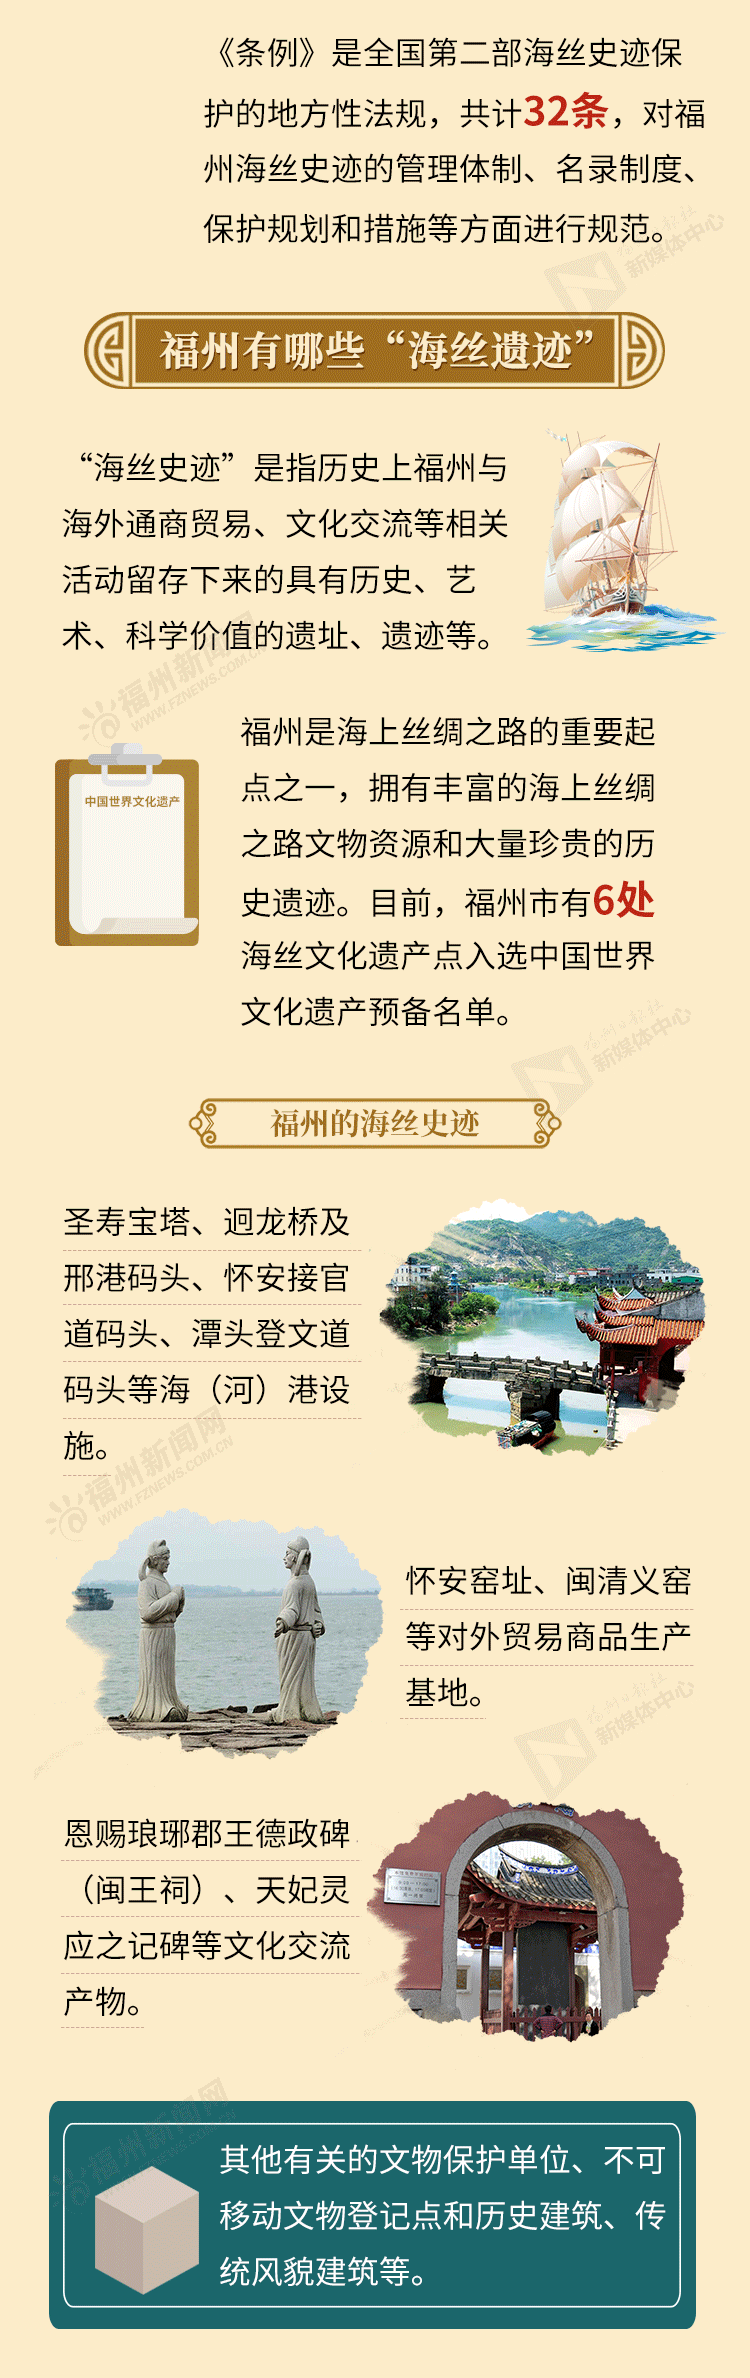 一图看懂《福州市海上丝绸之路史迹保护条例》